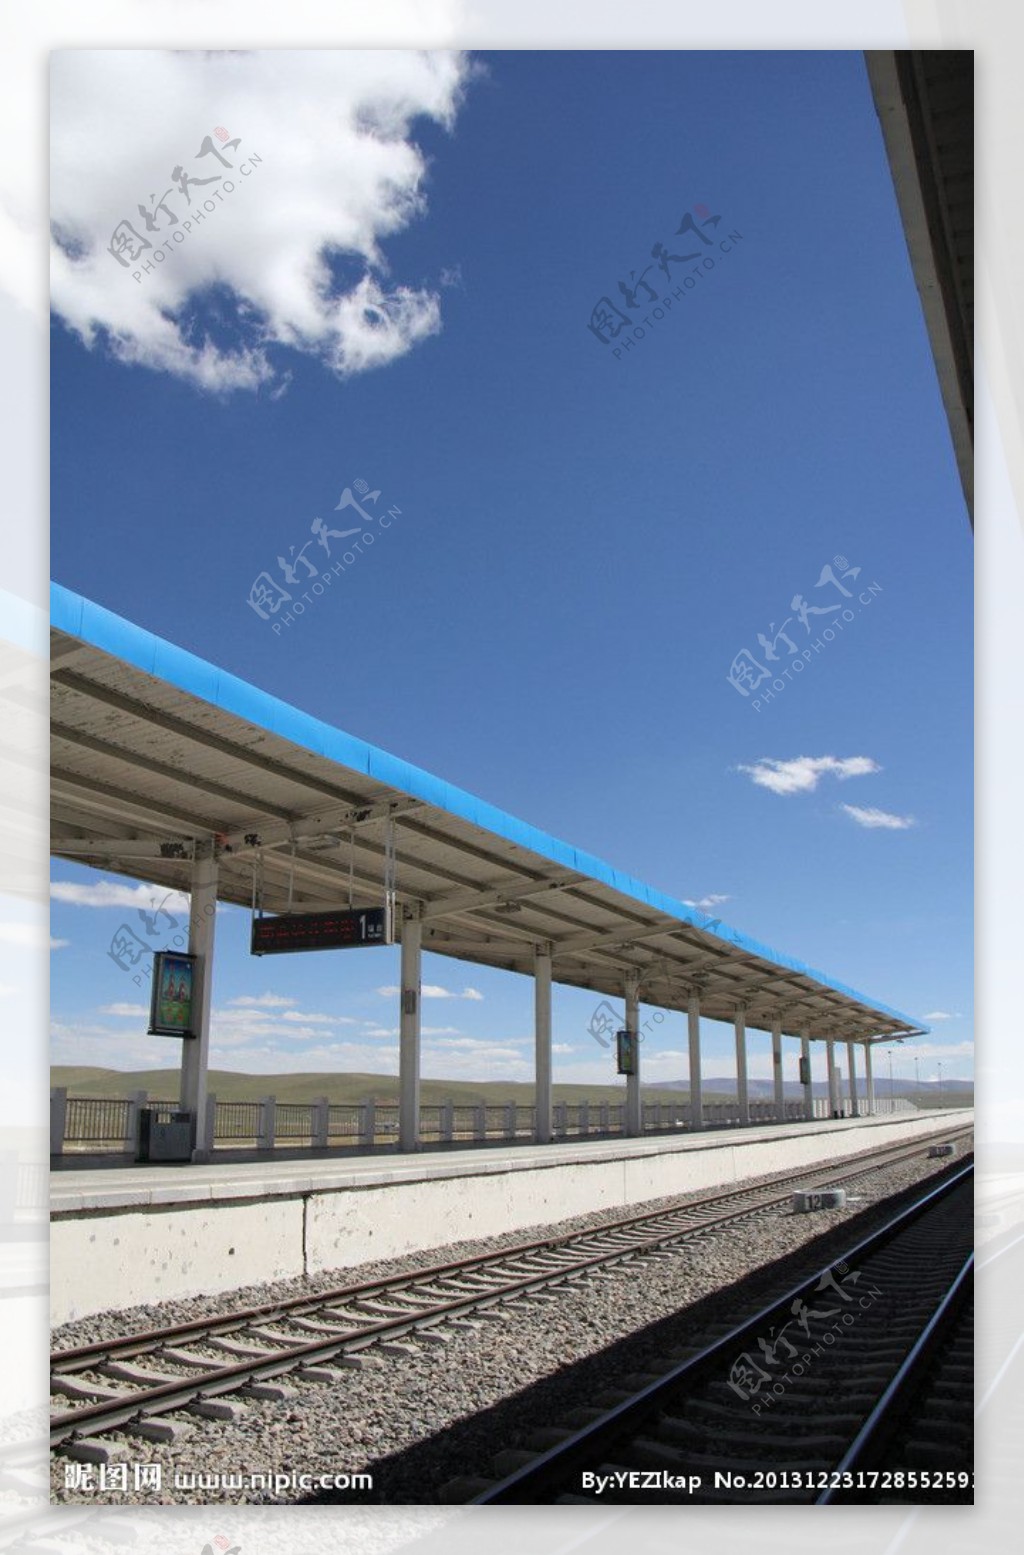 格库铁路将实施扩能改造 增开全线预留车站48处 -天山网 - 新疆新闻门户